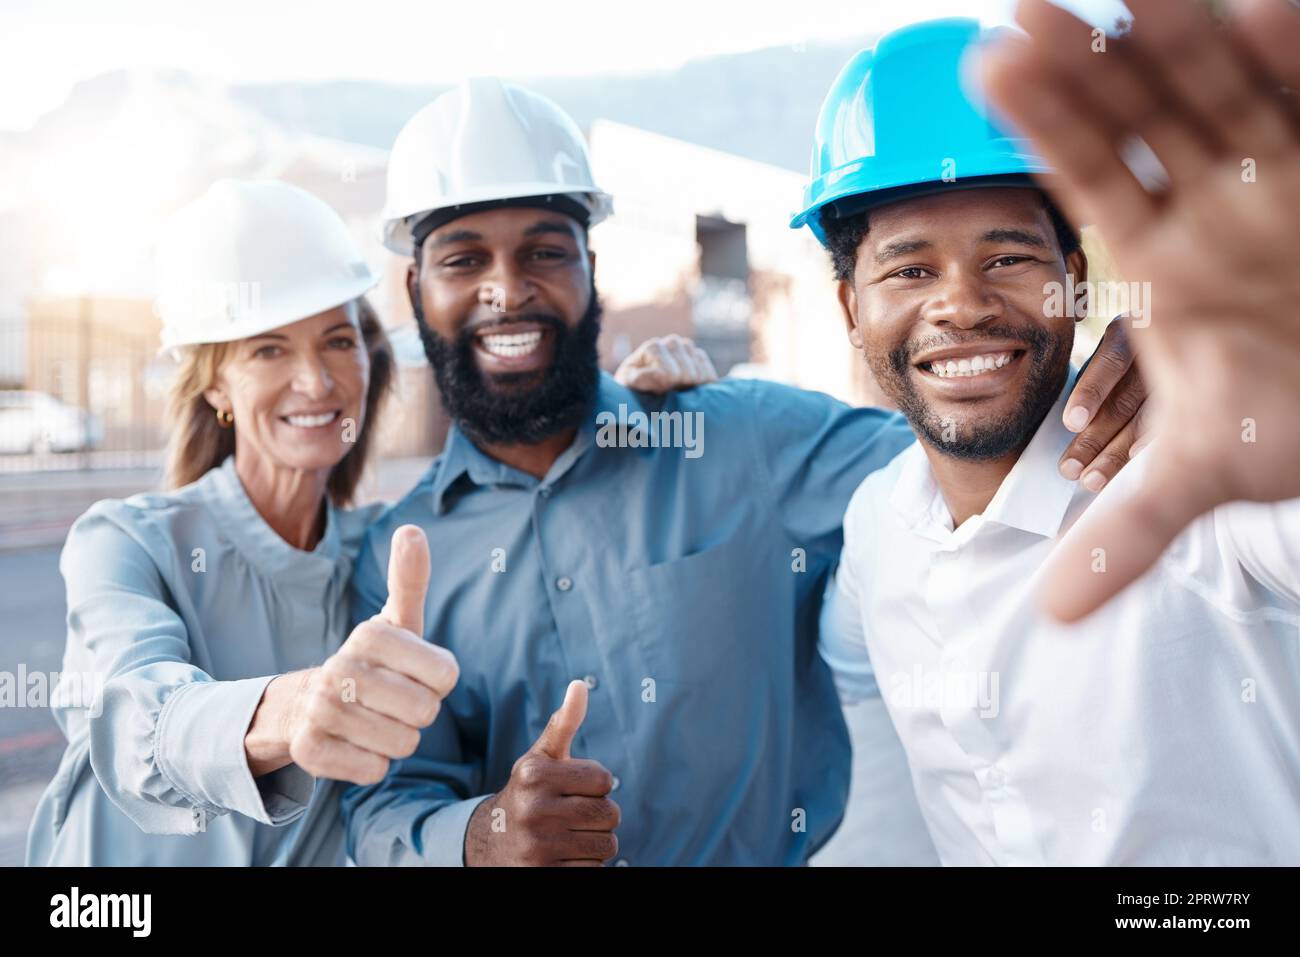 Selfie di cantiere e team soddisfatti con il pollice in alto durante la costruzione, la pianificazione e l'ingegneria. Architettura, sorriso e gruppo di architetti approvano la sicurezza di un progetto di sviluppo Foto Stock